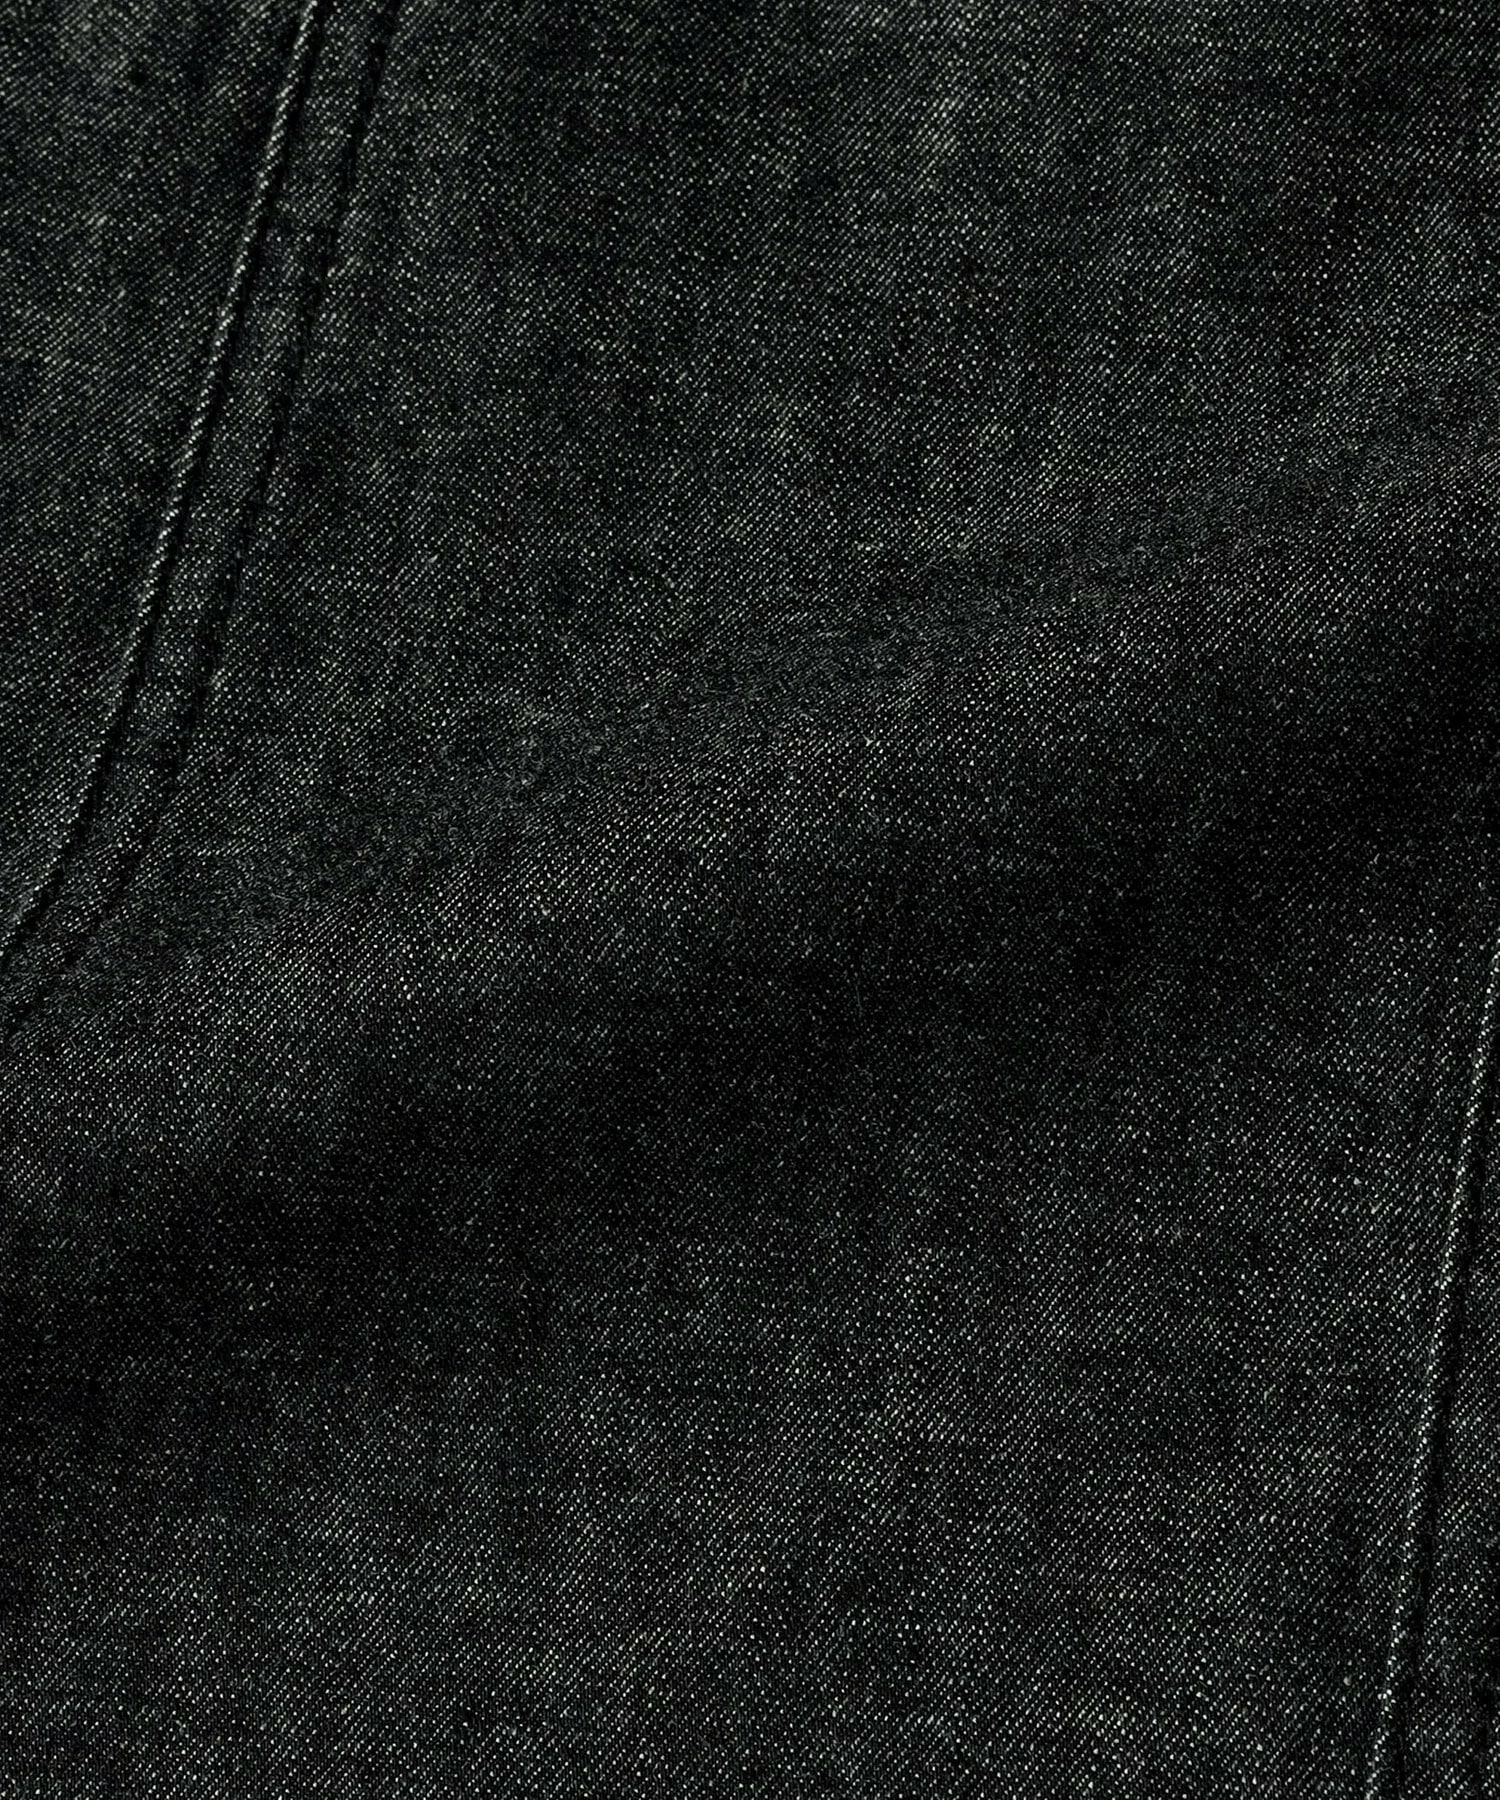 【L'EQUIPE】【Lサイズ】ストレッチデニムスカート 詳細画像 ブラック 6